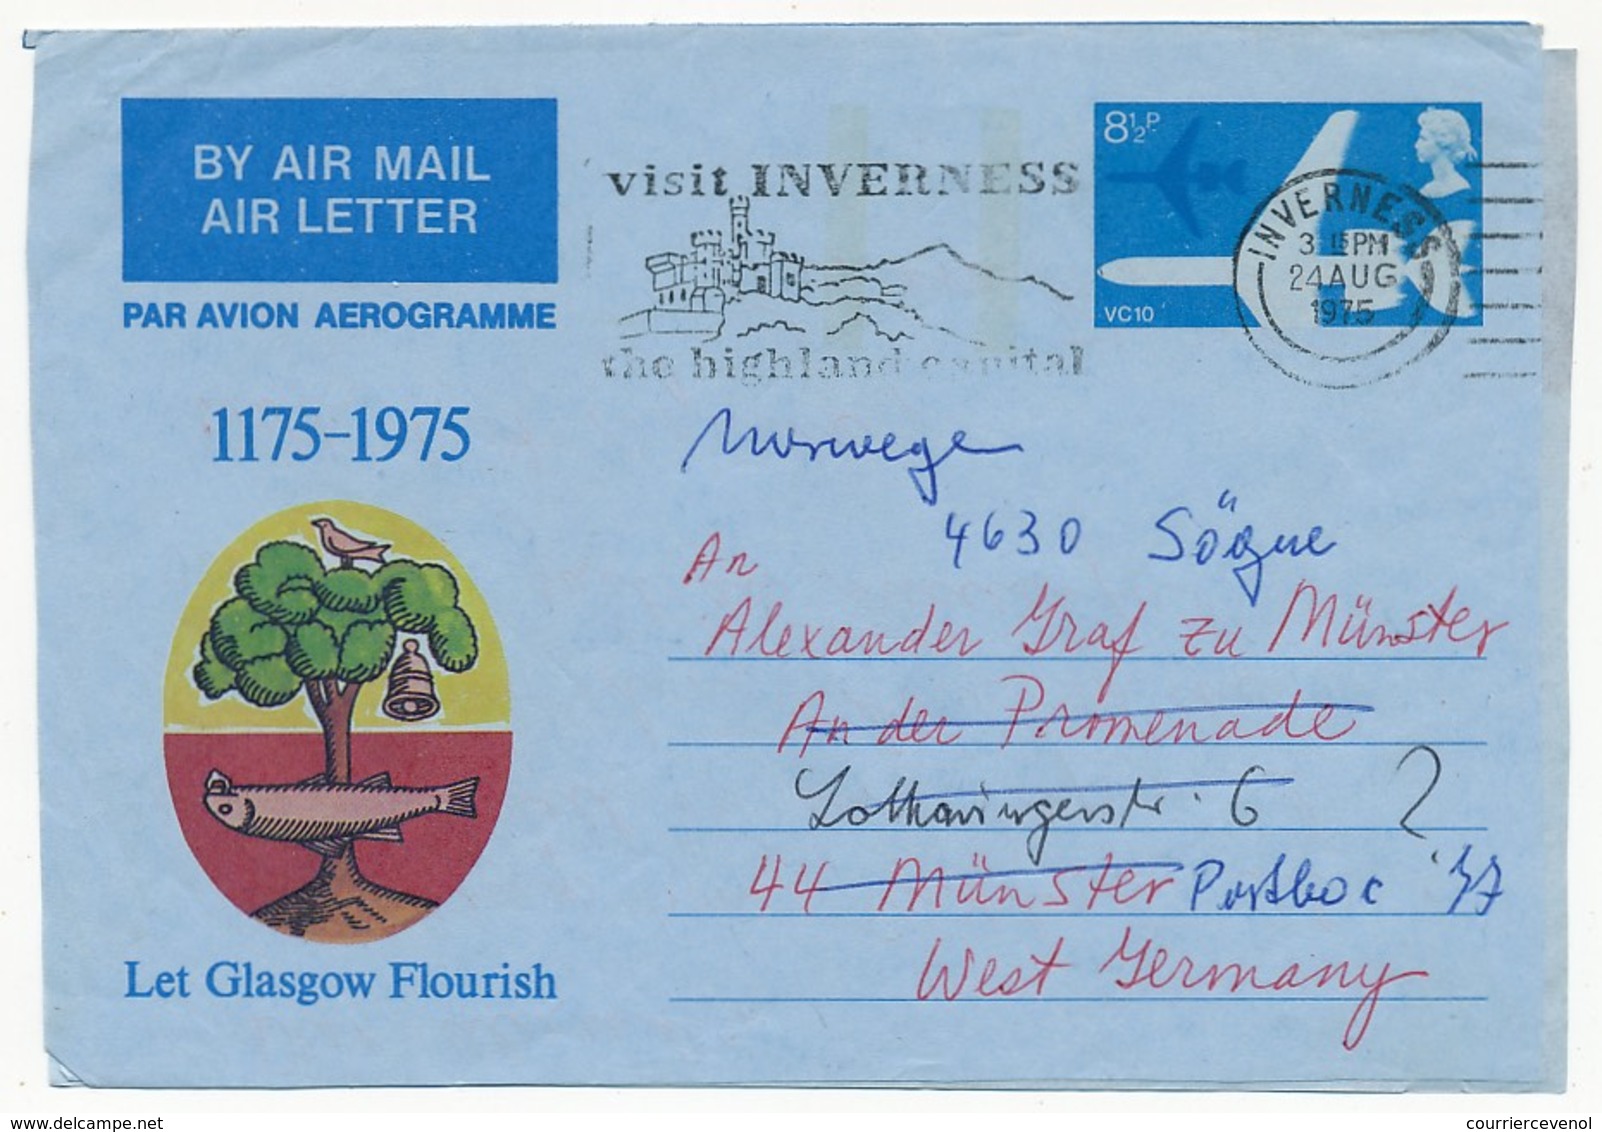 GRANDE BRETAGNE - 12 Entiers postaux divers (aérogrammes, cartes lettres, enveloppes) tous états